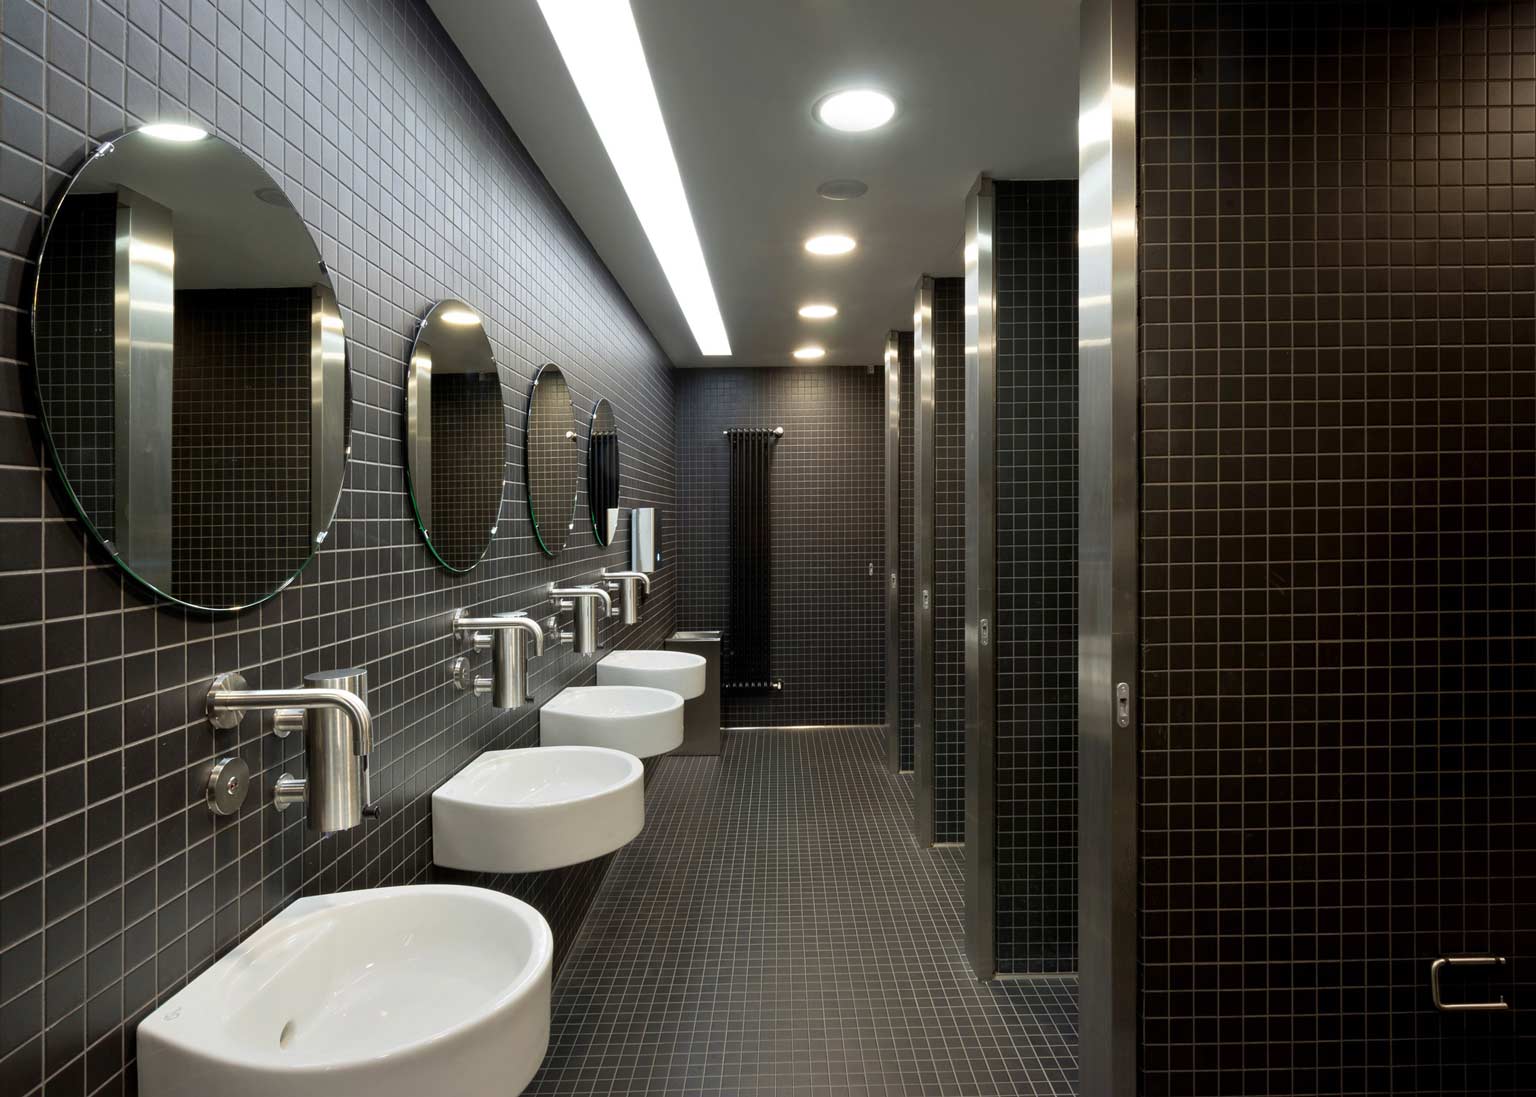 rivestimento continuo pavimento pareti piastrelle klinker nere bagno di design museo Mudec Milano con velette e faretti a incasso